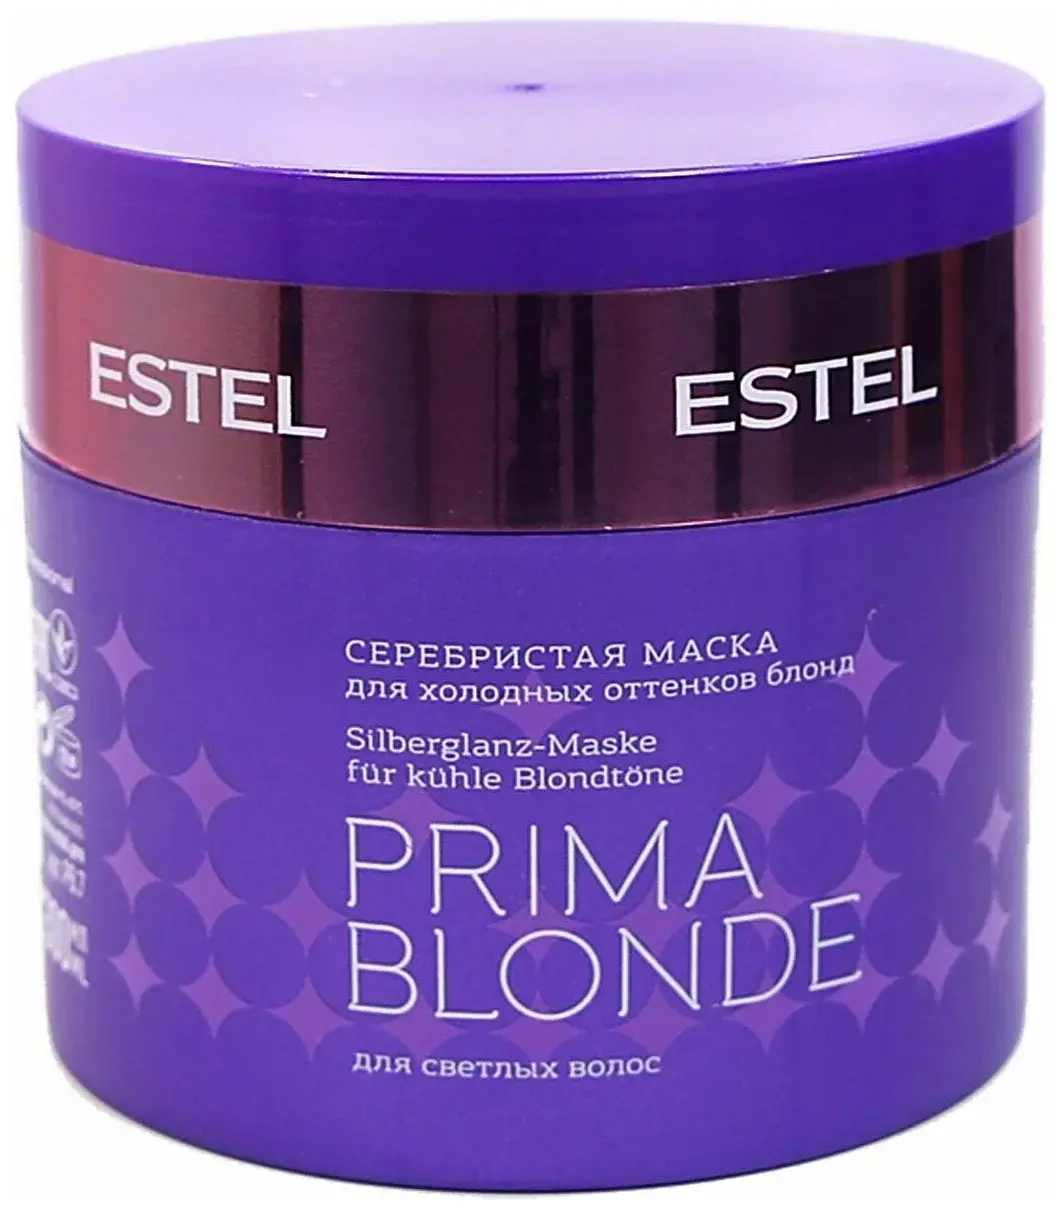 ЭСТЕЛЬ (ESTEL) Prima Blonde маска для волос 300мл Серебристая (Юникосметик, РФ)